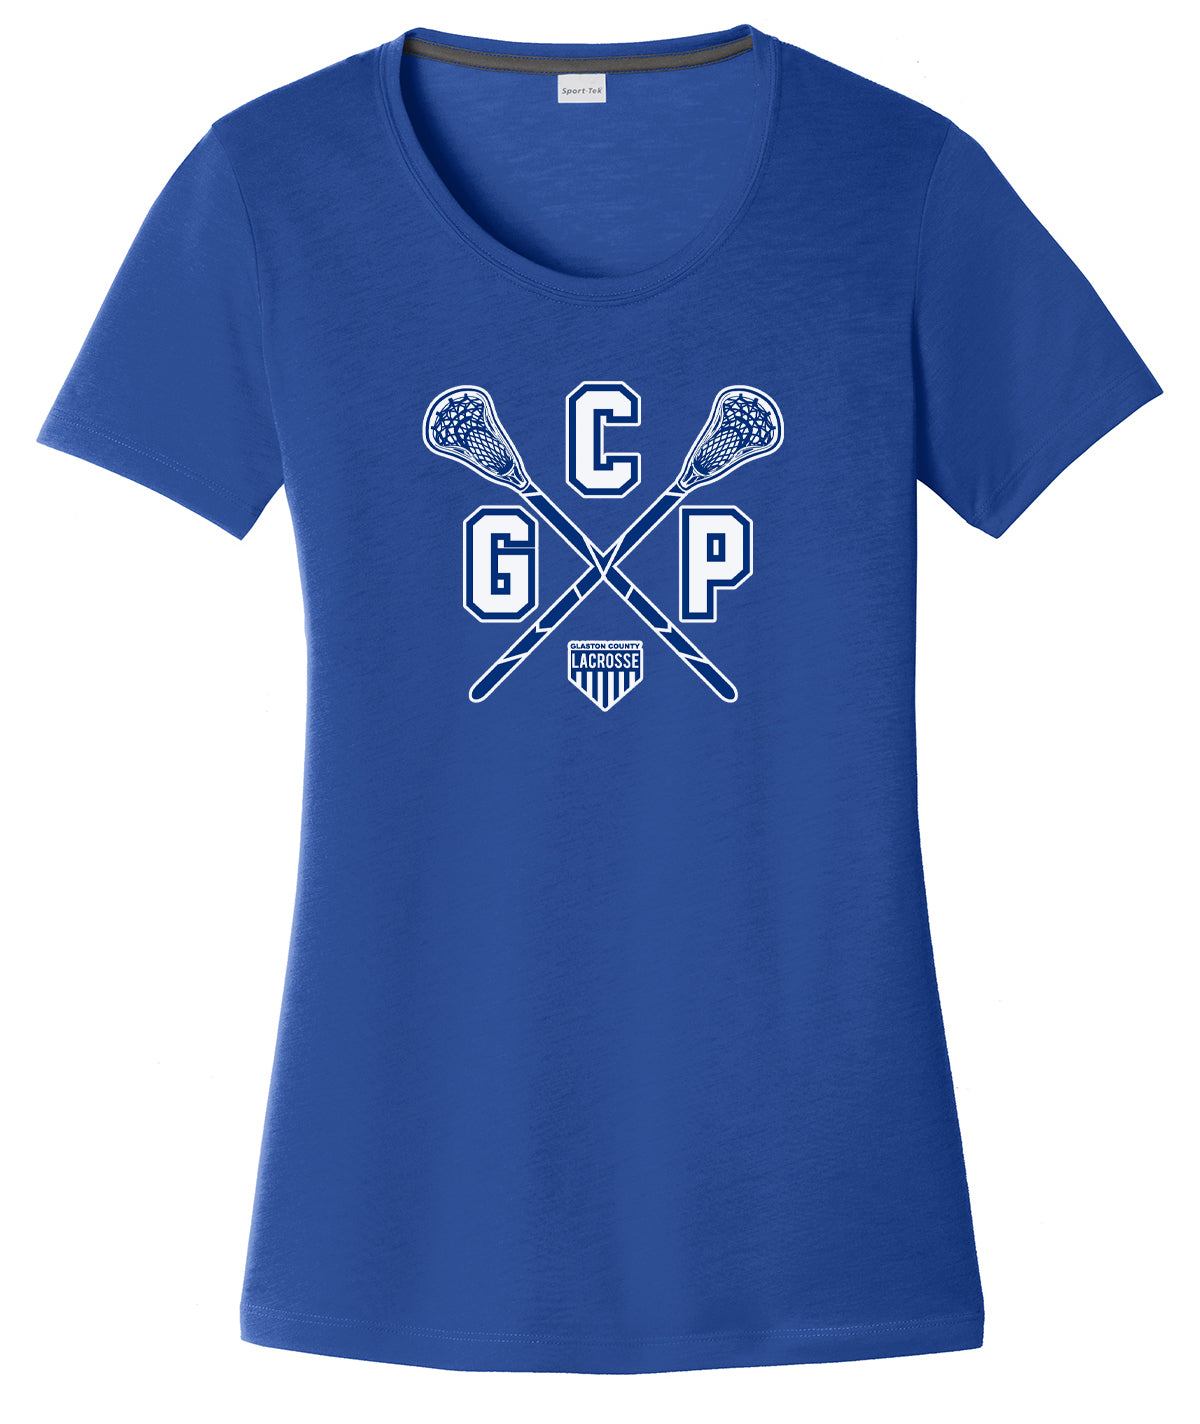 GCP Lacrosse Women's Royal CottonTouch Performance T-Shirt